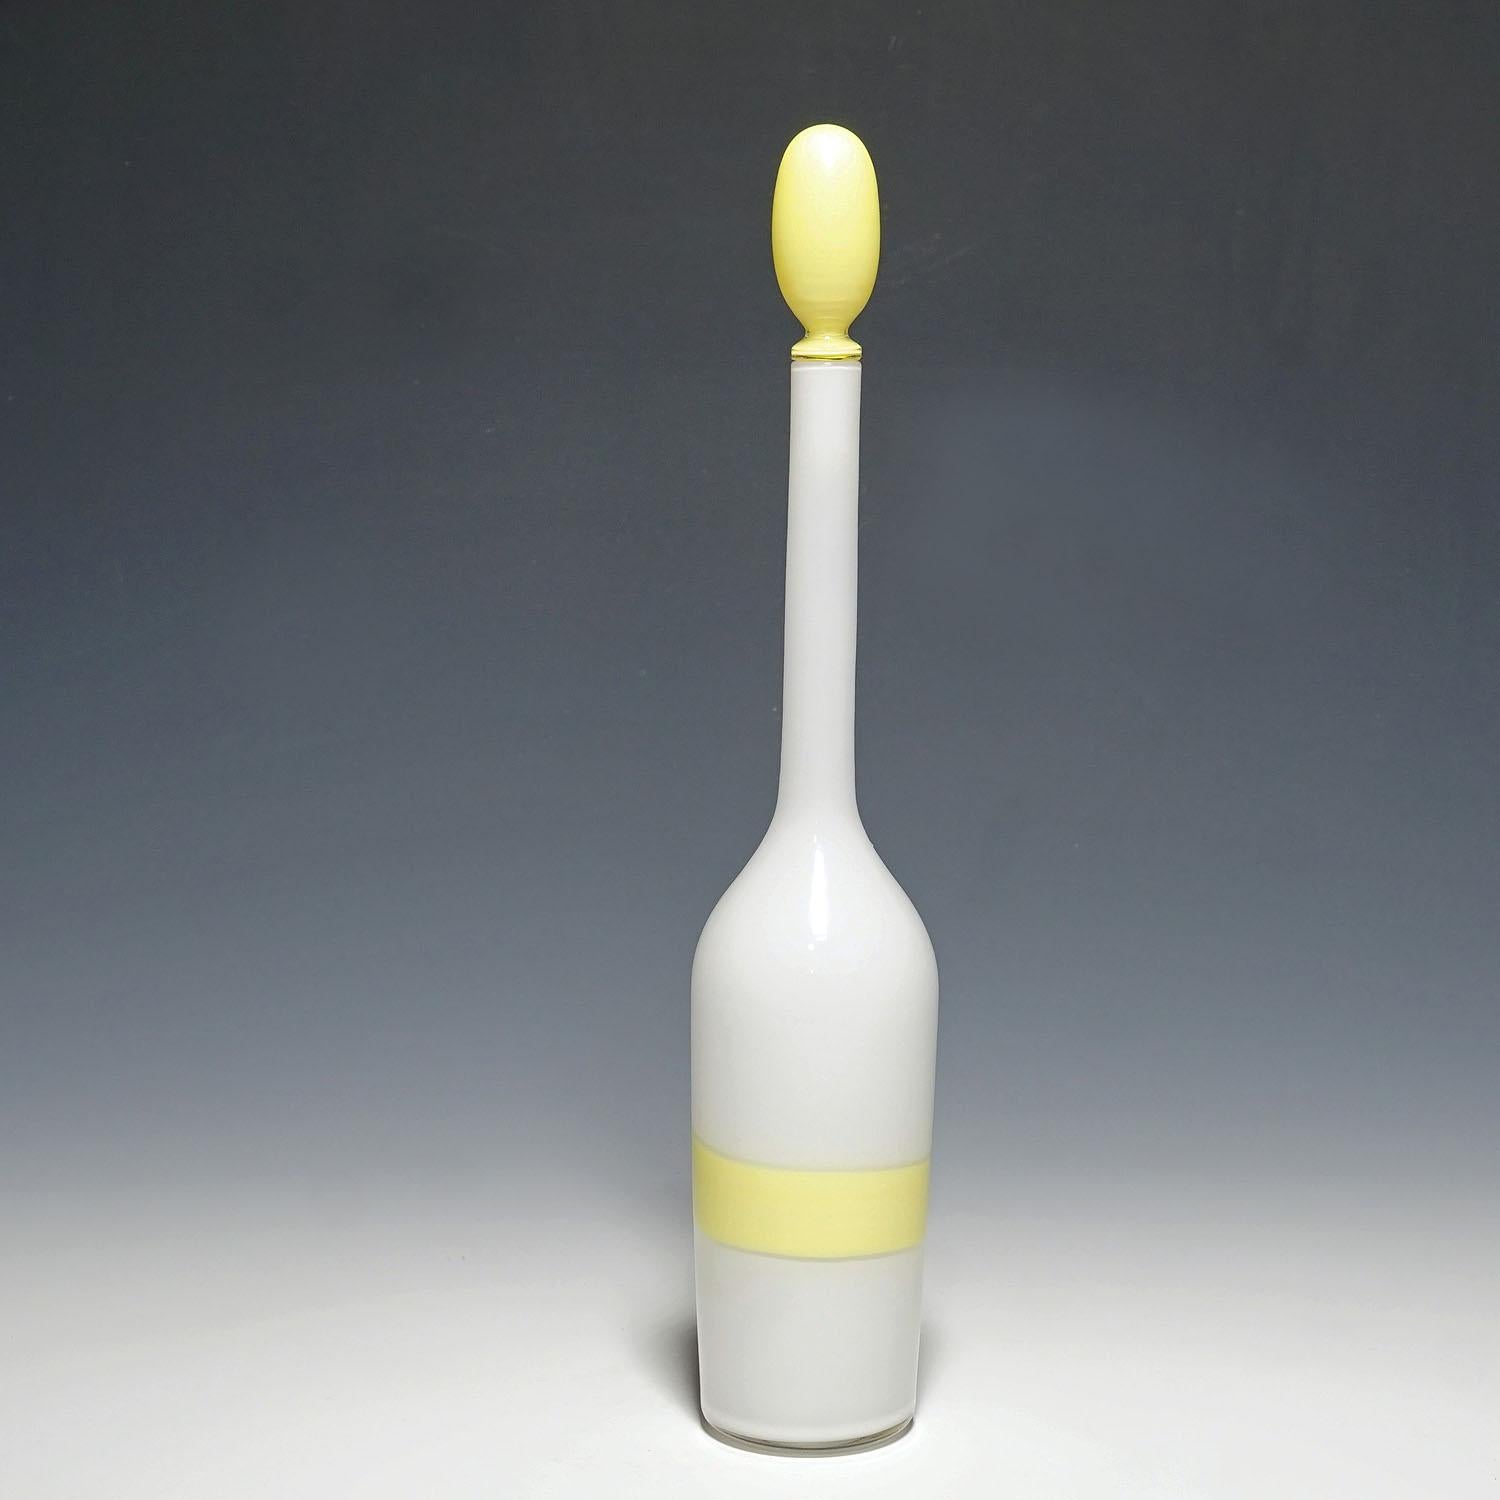 Bouteille en verre d'art Venini avec décor Fasce en jaune, Murano années 1950

Une grande bouteille en verre d'art blanc opaque avec un bouchon jaune et une bande jaune 